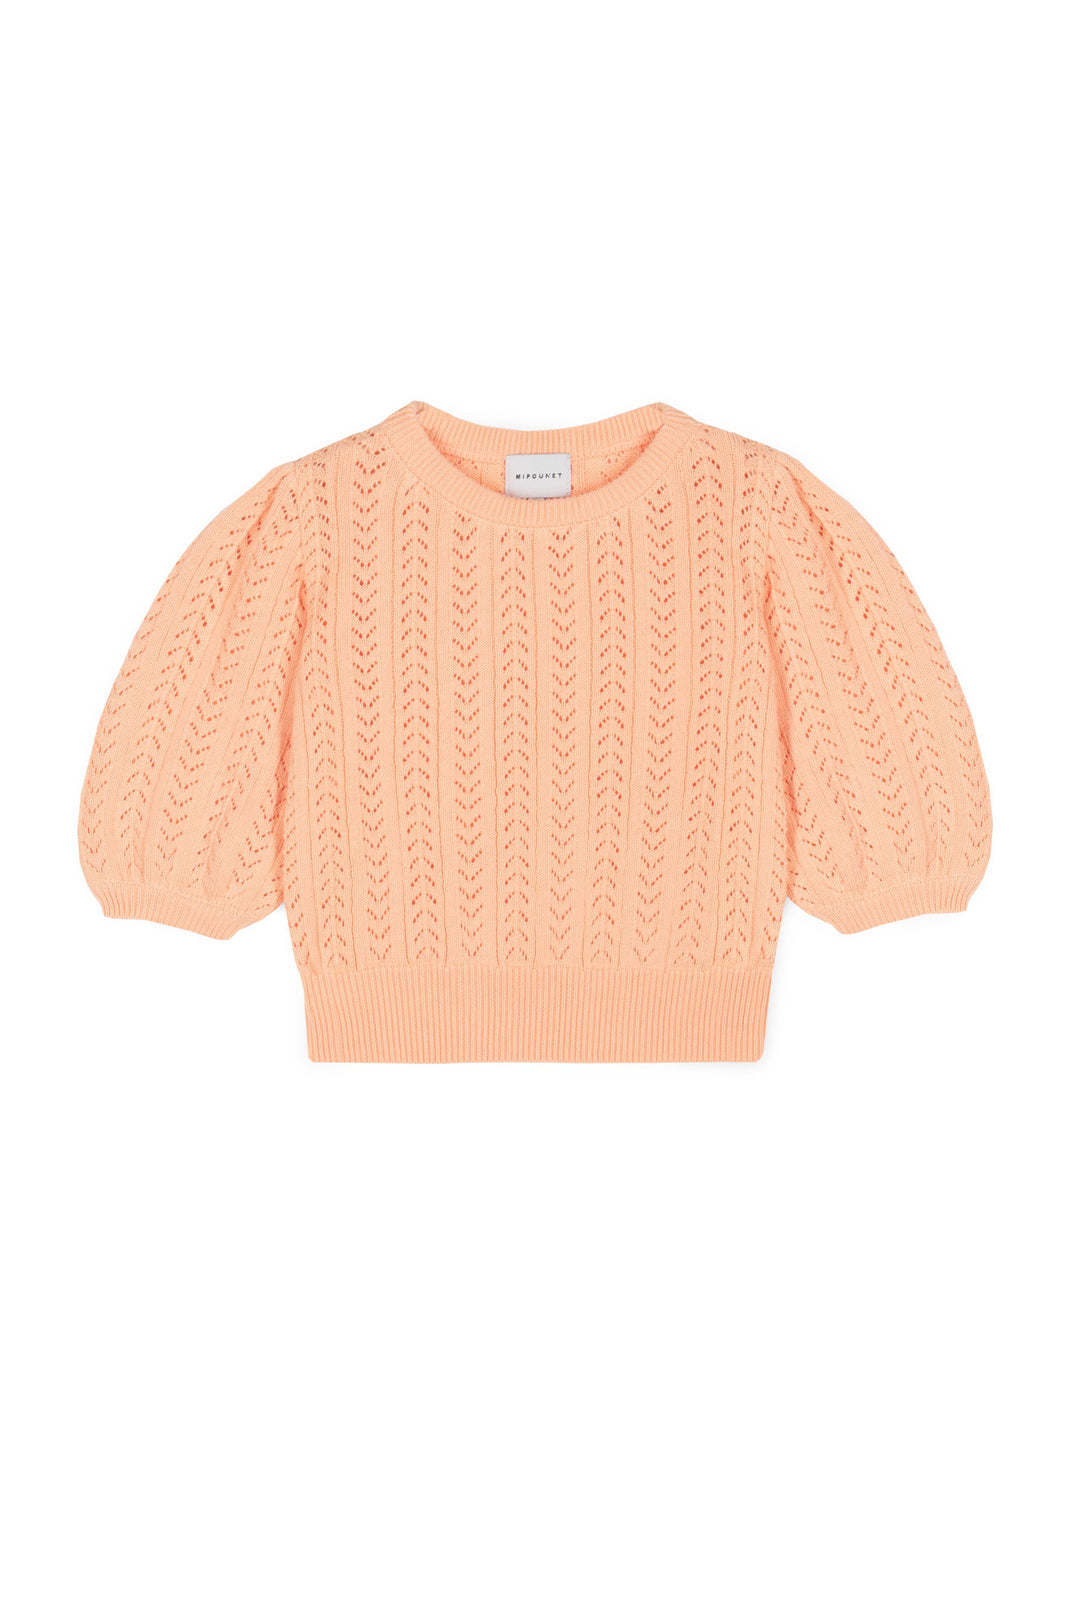 Sweater Nora Openwork Cotton Peach